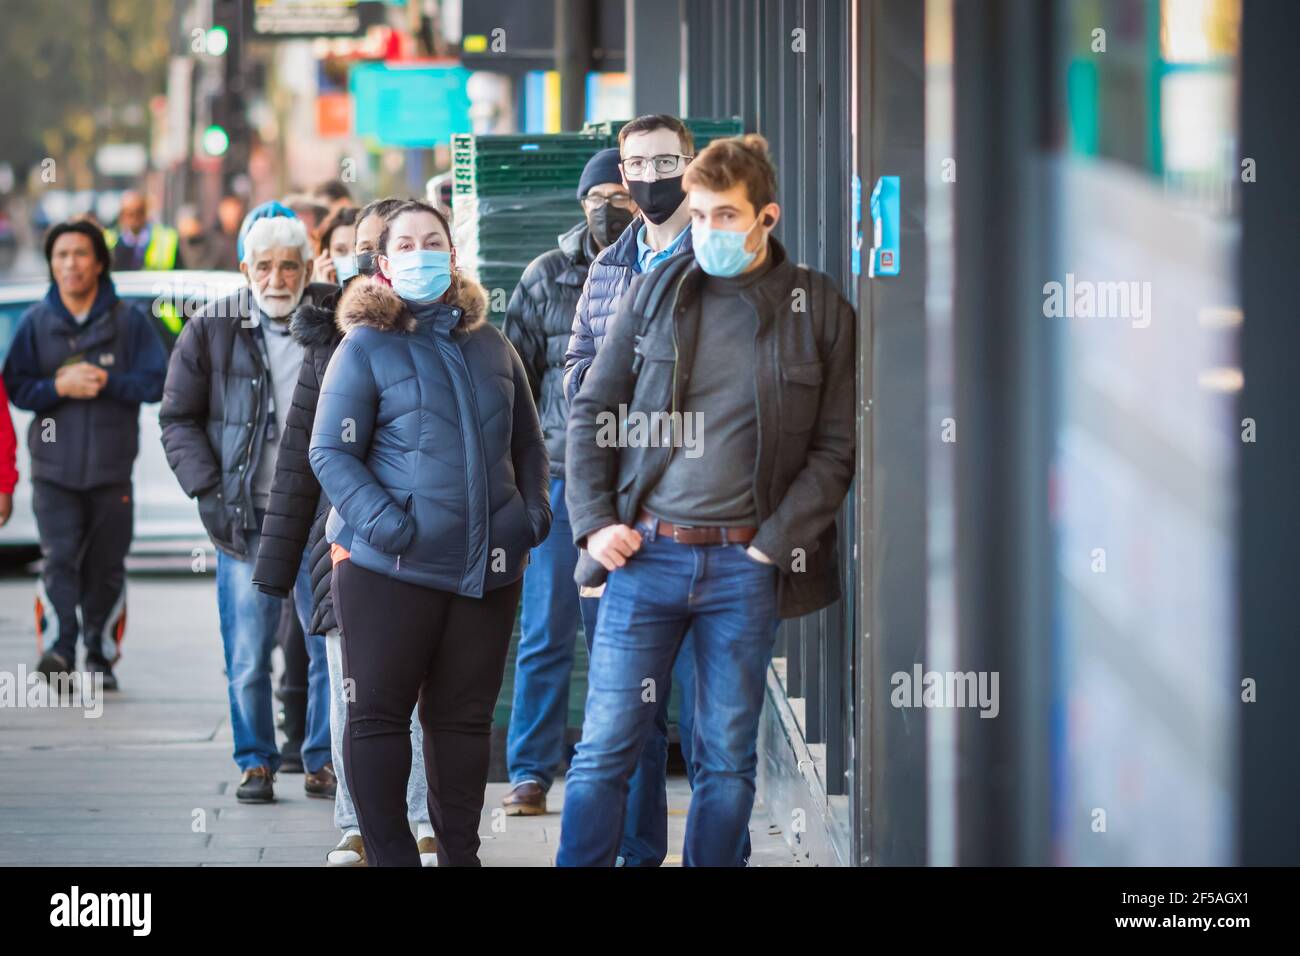 Londres, Royaume-Uni - 26 février 2021 - les clients ayant des masques faciaux font la queue à l'extérieur du magasin pendant la pandémie COVID-19 Banque D'Images